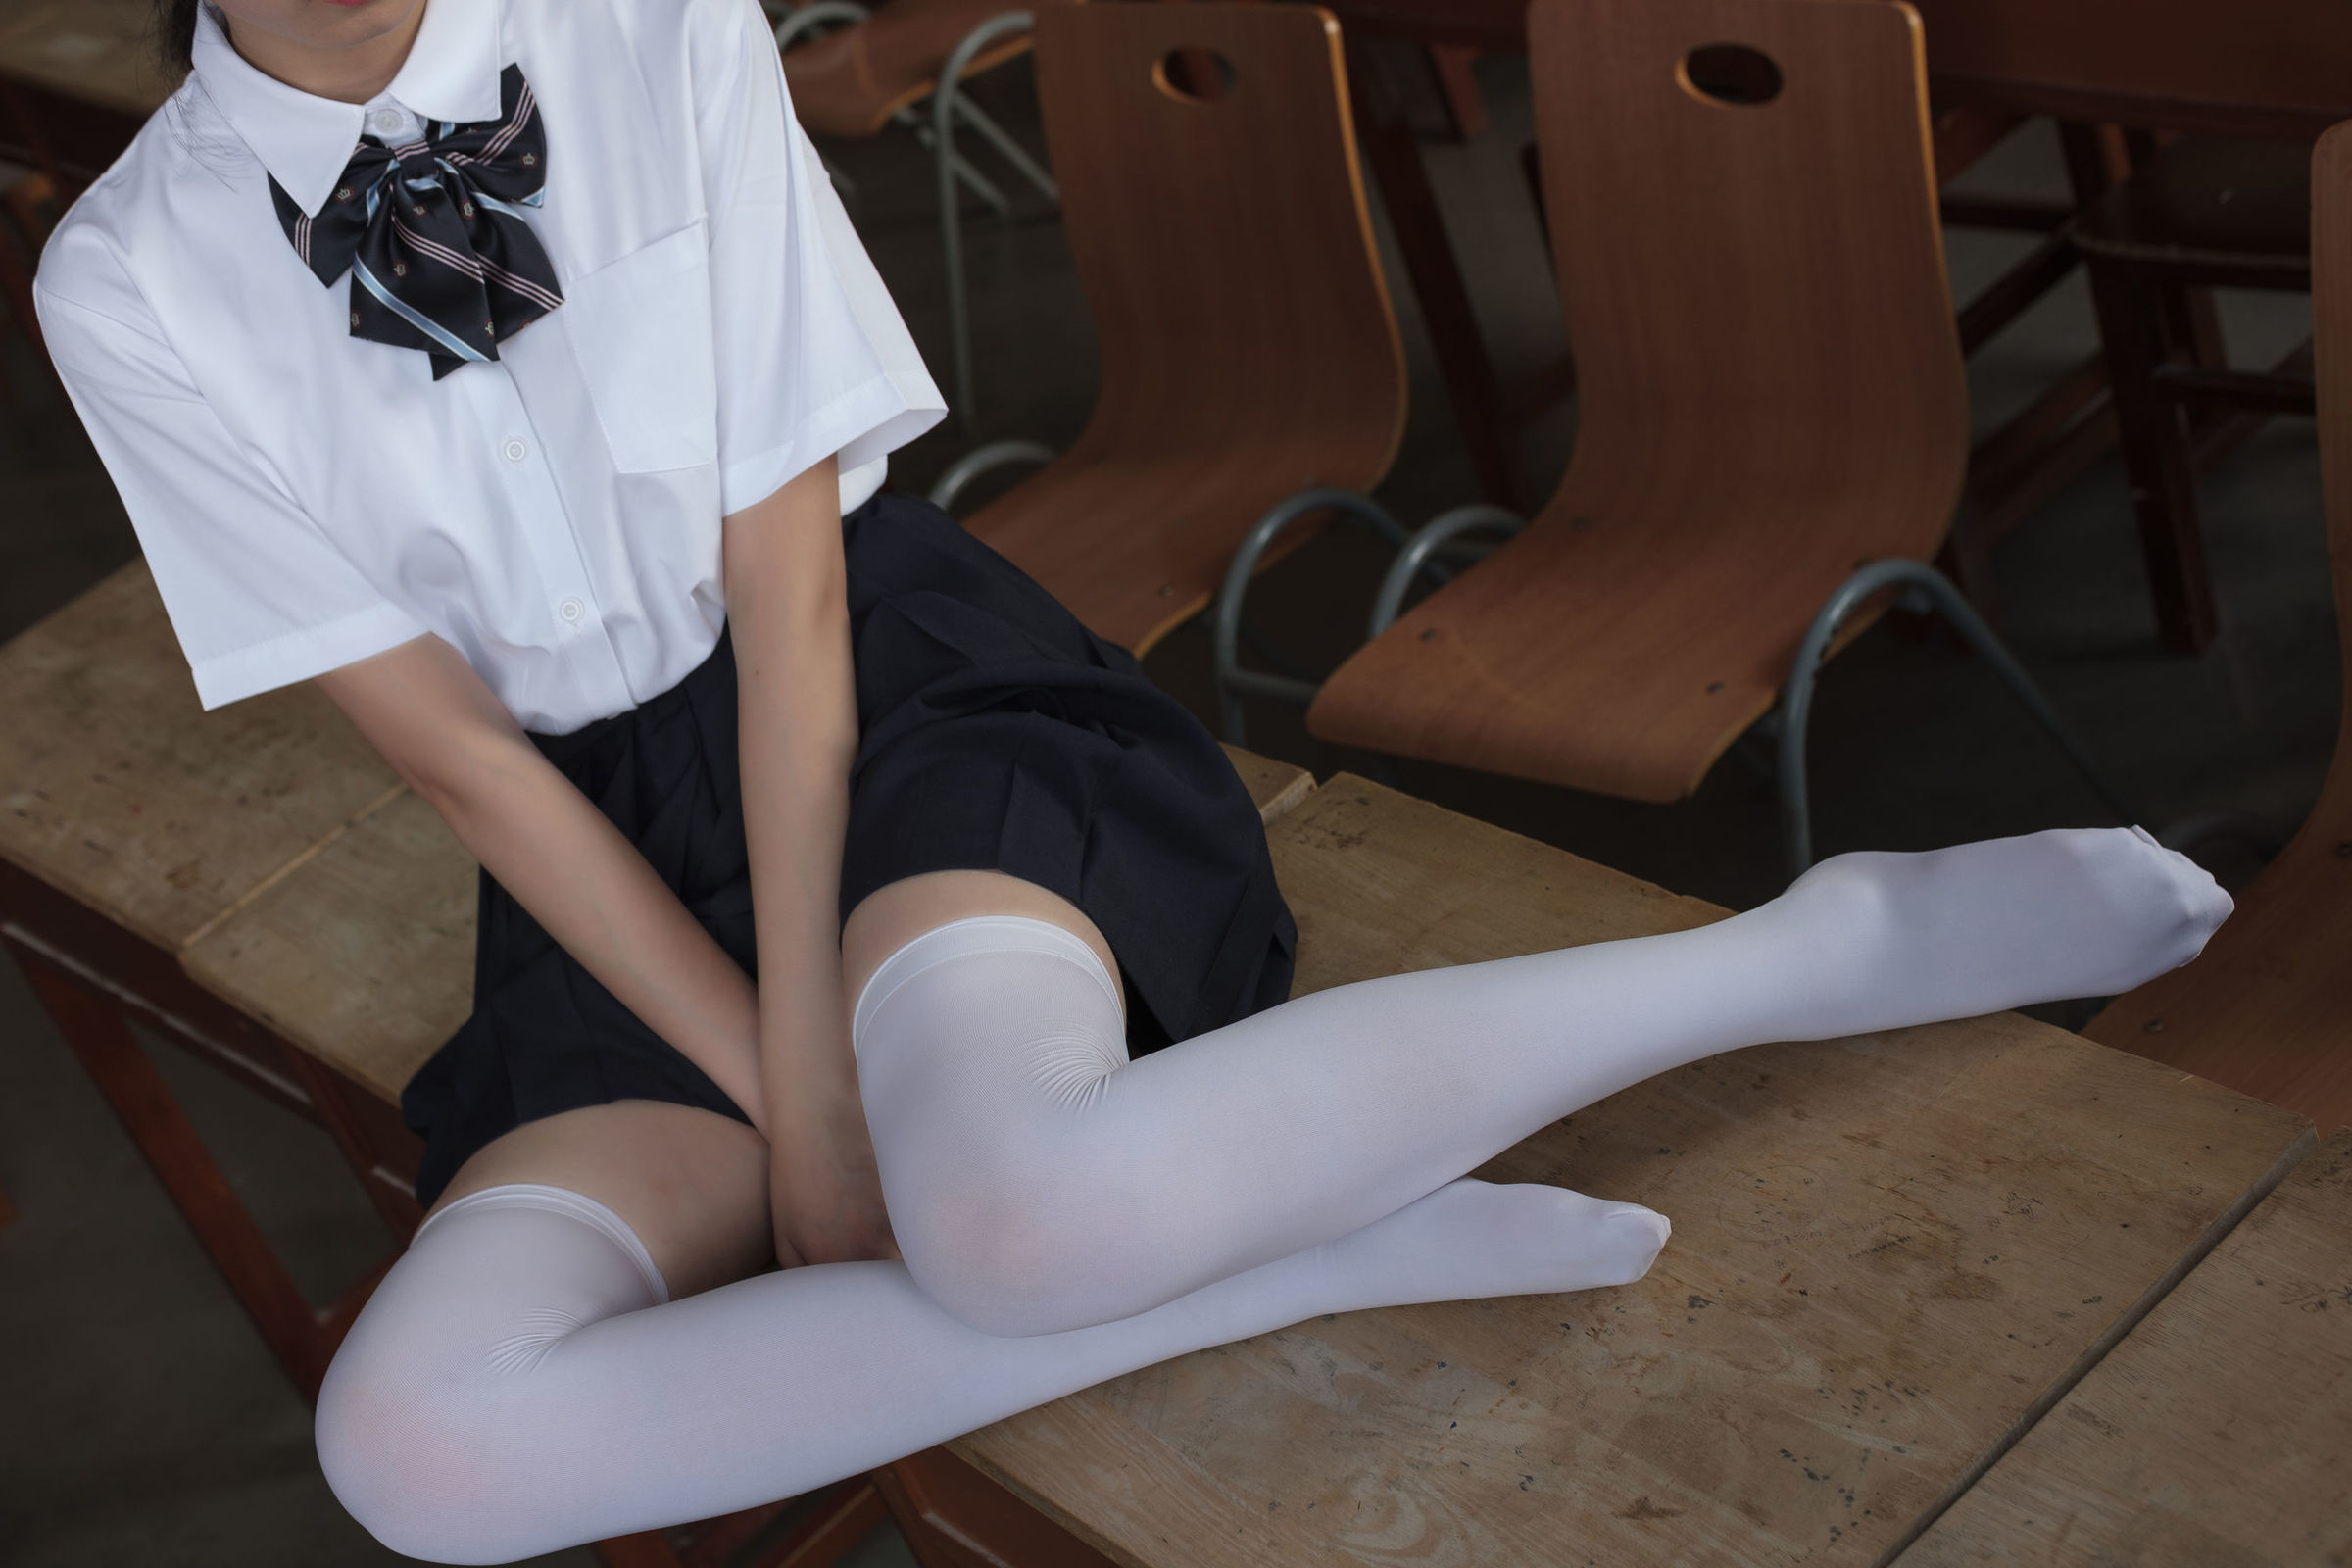 [森萝财团] BETA-022 教室里的JK白丝少女 萝莉丝袜写真